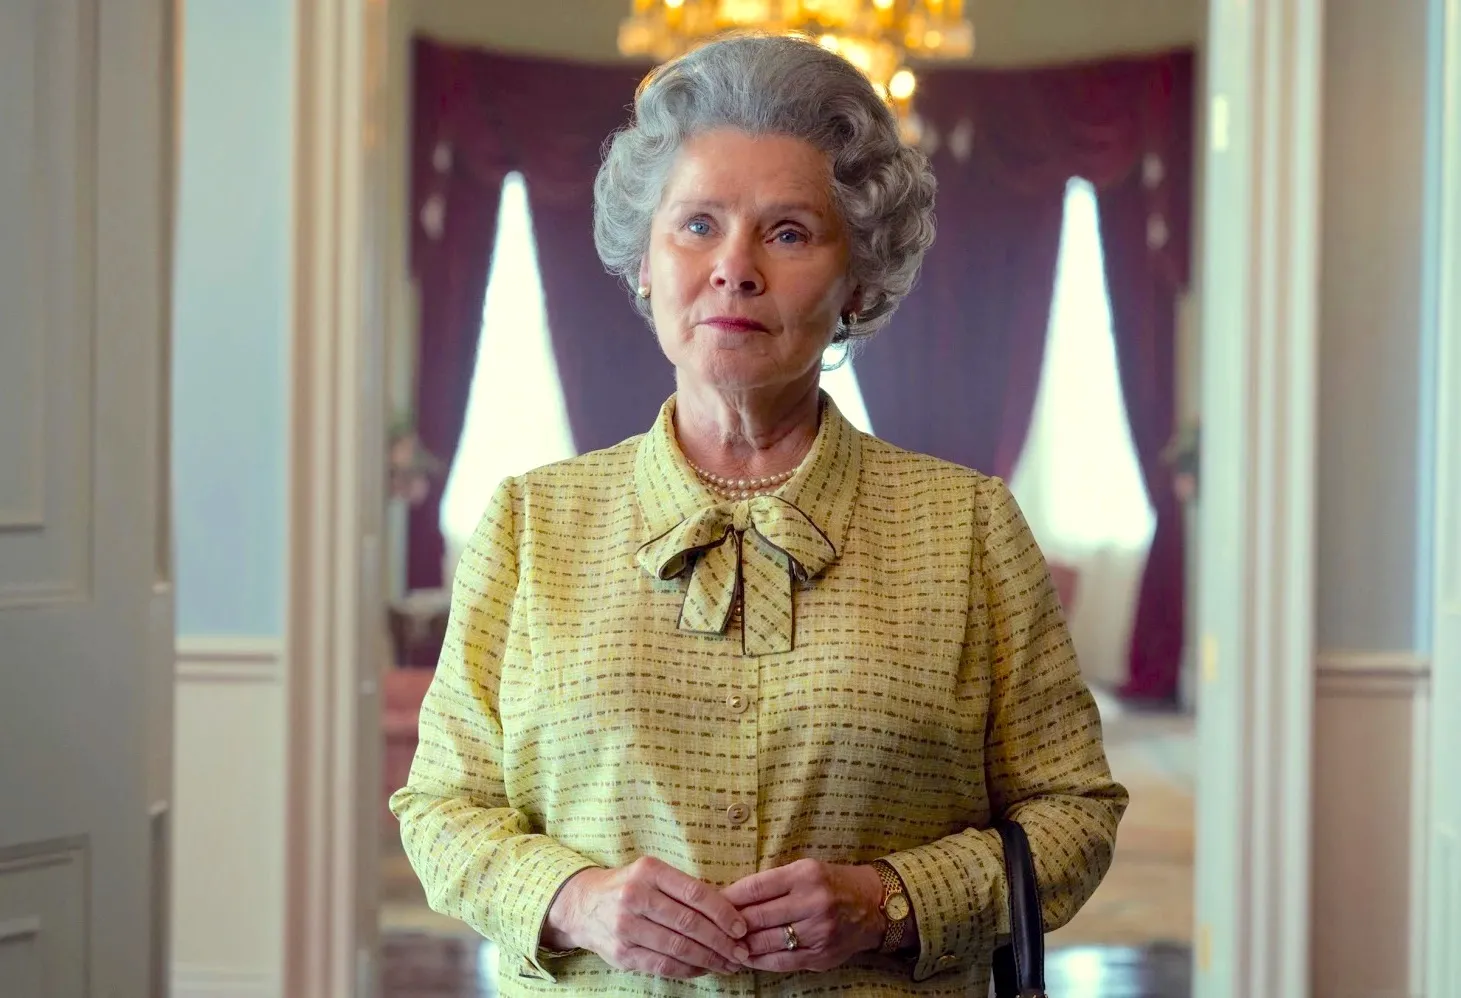 'The Crown' temporada 5 llega a Netflix en noviembre. La trama se acerca a la actualidad y ofrece la mejor radiografía de la familia real británica